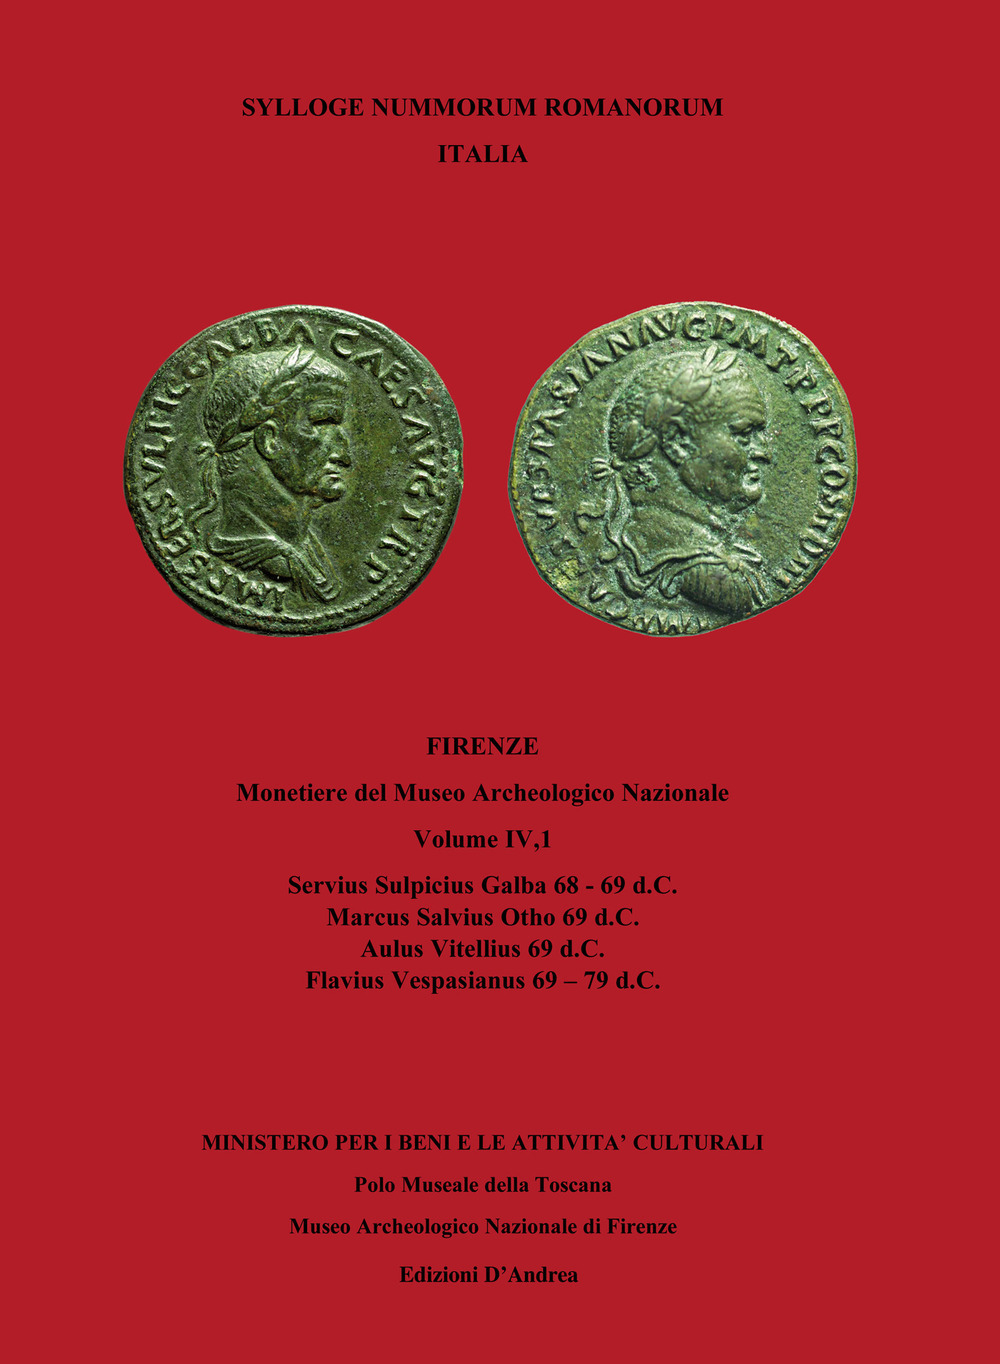 Libri Stefano Bani - Sylloge Nummorum Romanorum Italia Vol 04/1 NUOVO SIGILLATO, EDIZIONE DEL 15/04/2020 SUBITO DISPONIBILE